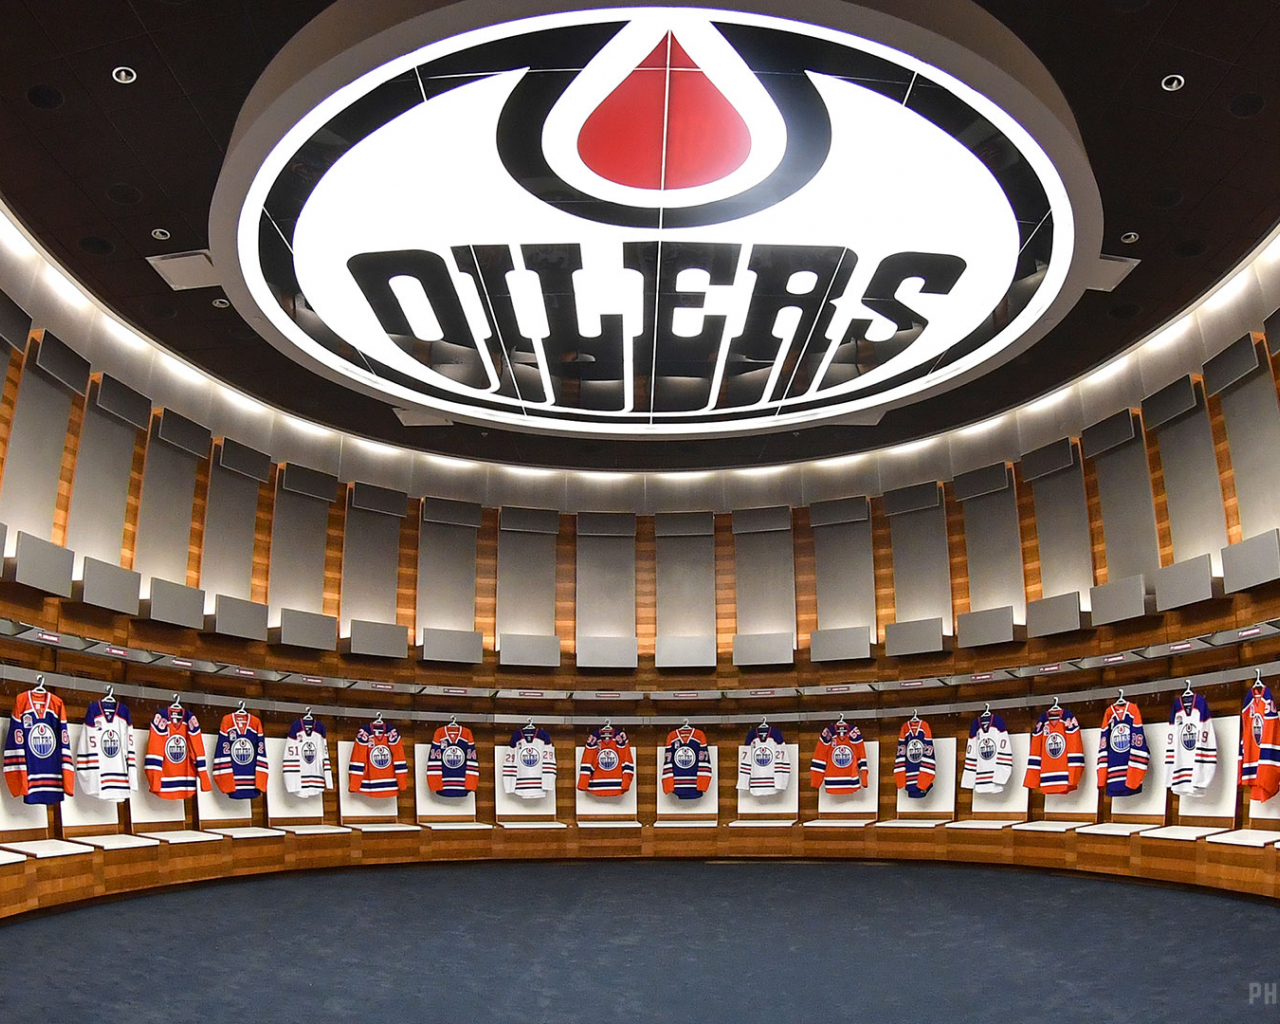 Edmonton Oilers Wallpapers - Wallpaper Cave